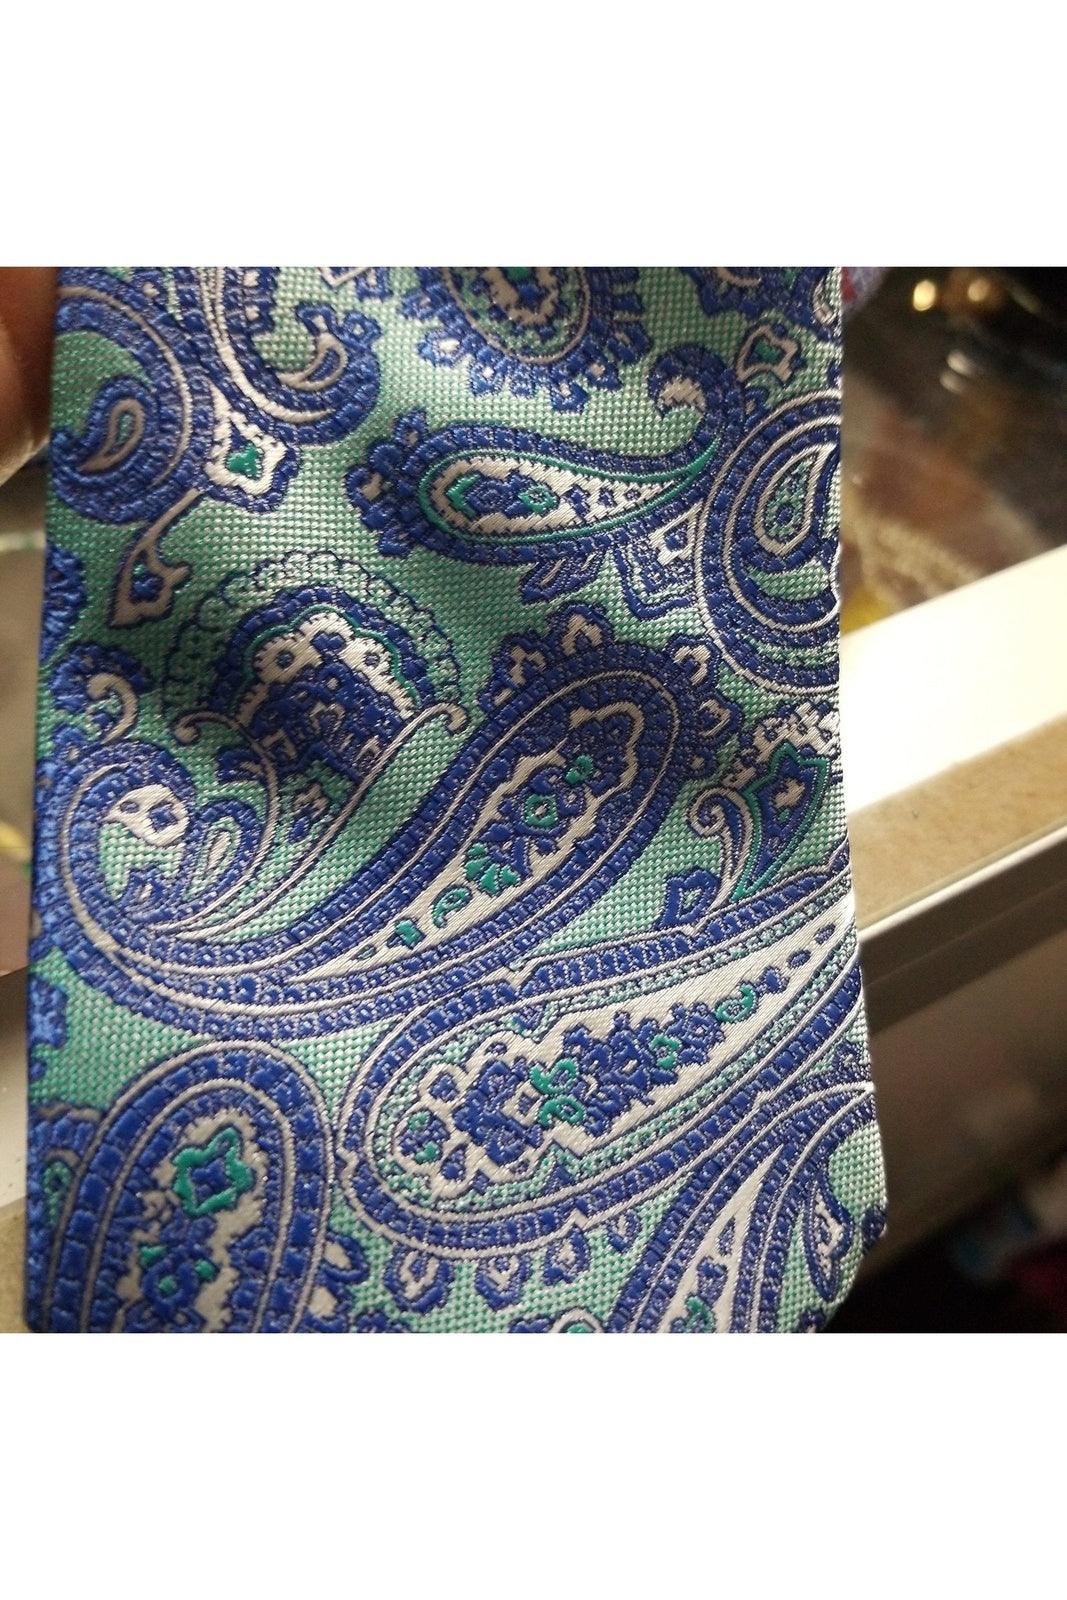 IZOD men's blue paisley necktie - Solé Resale Boutique thrift